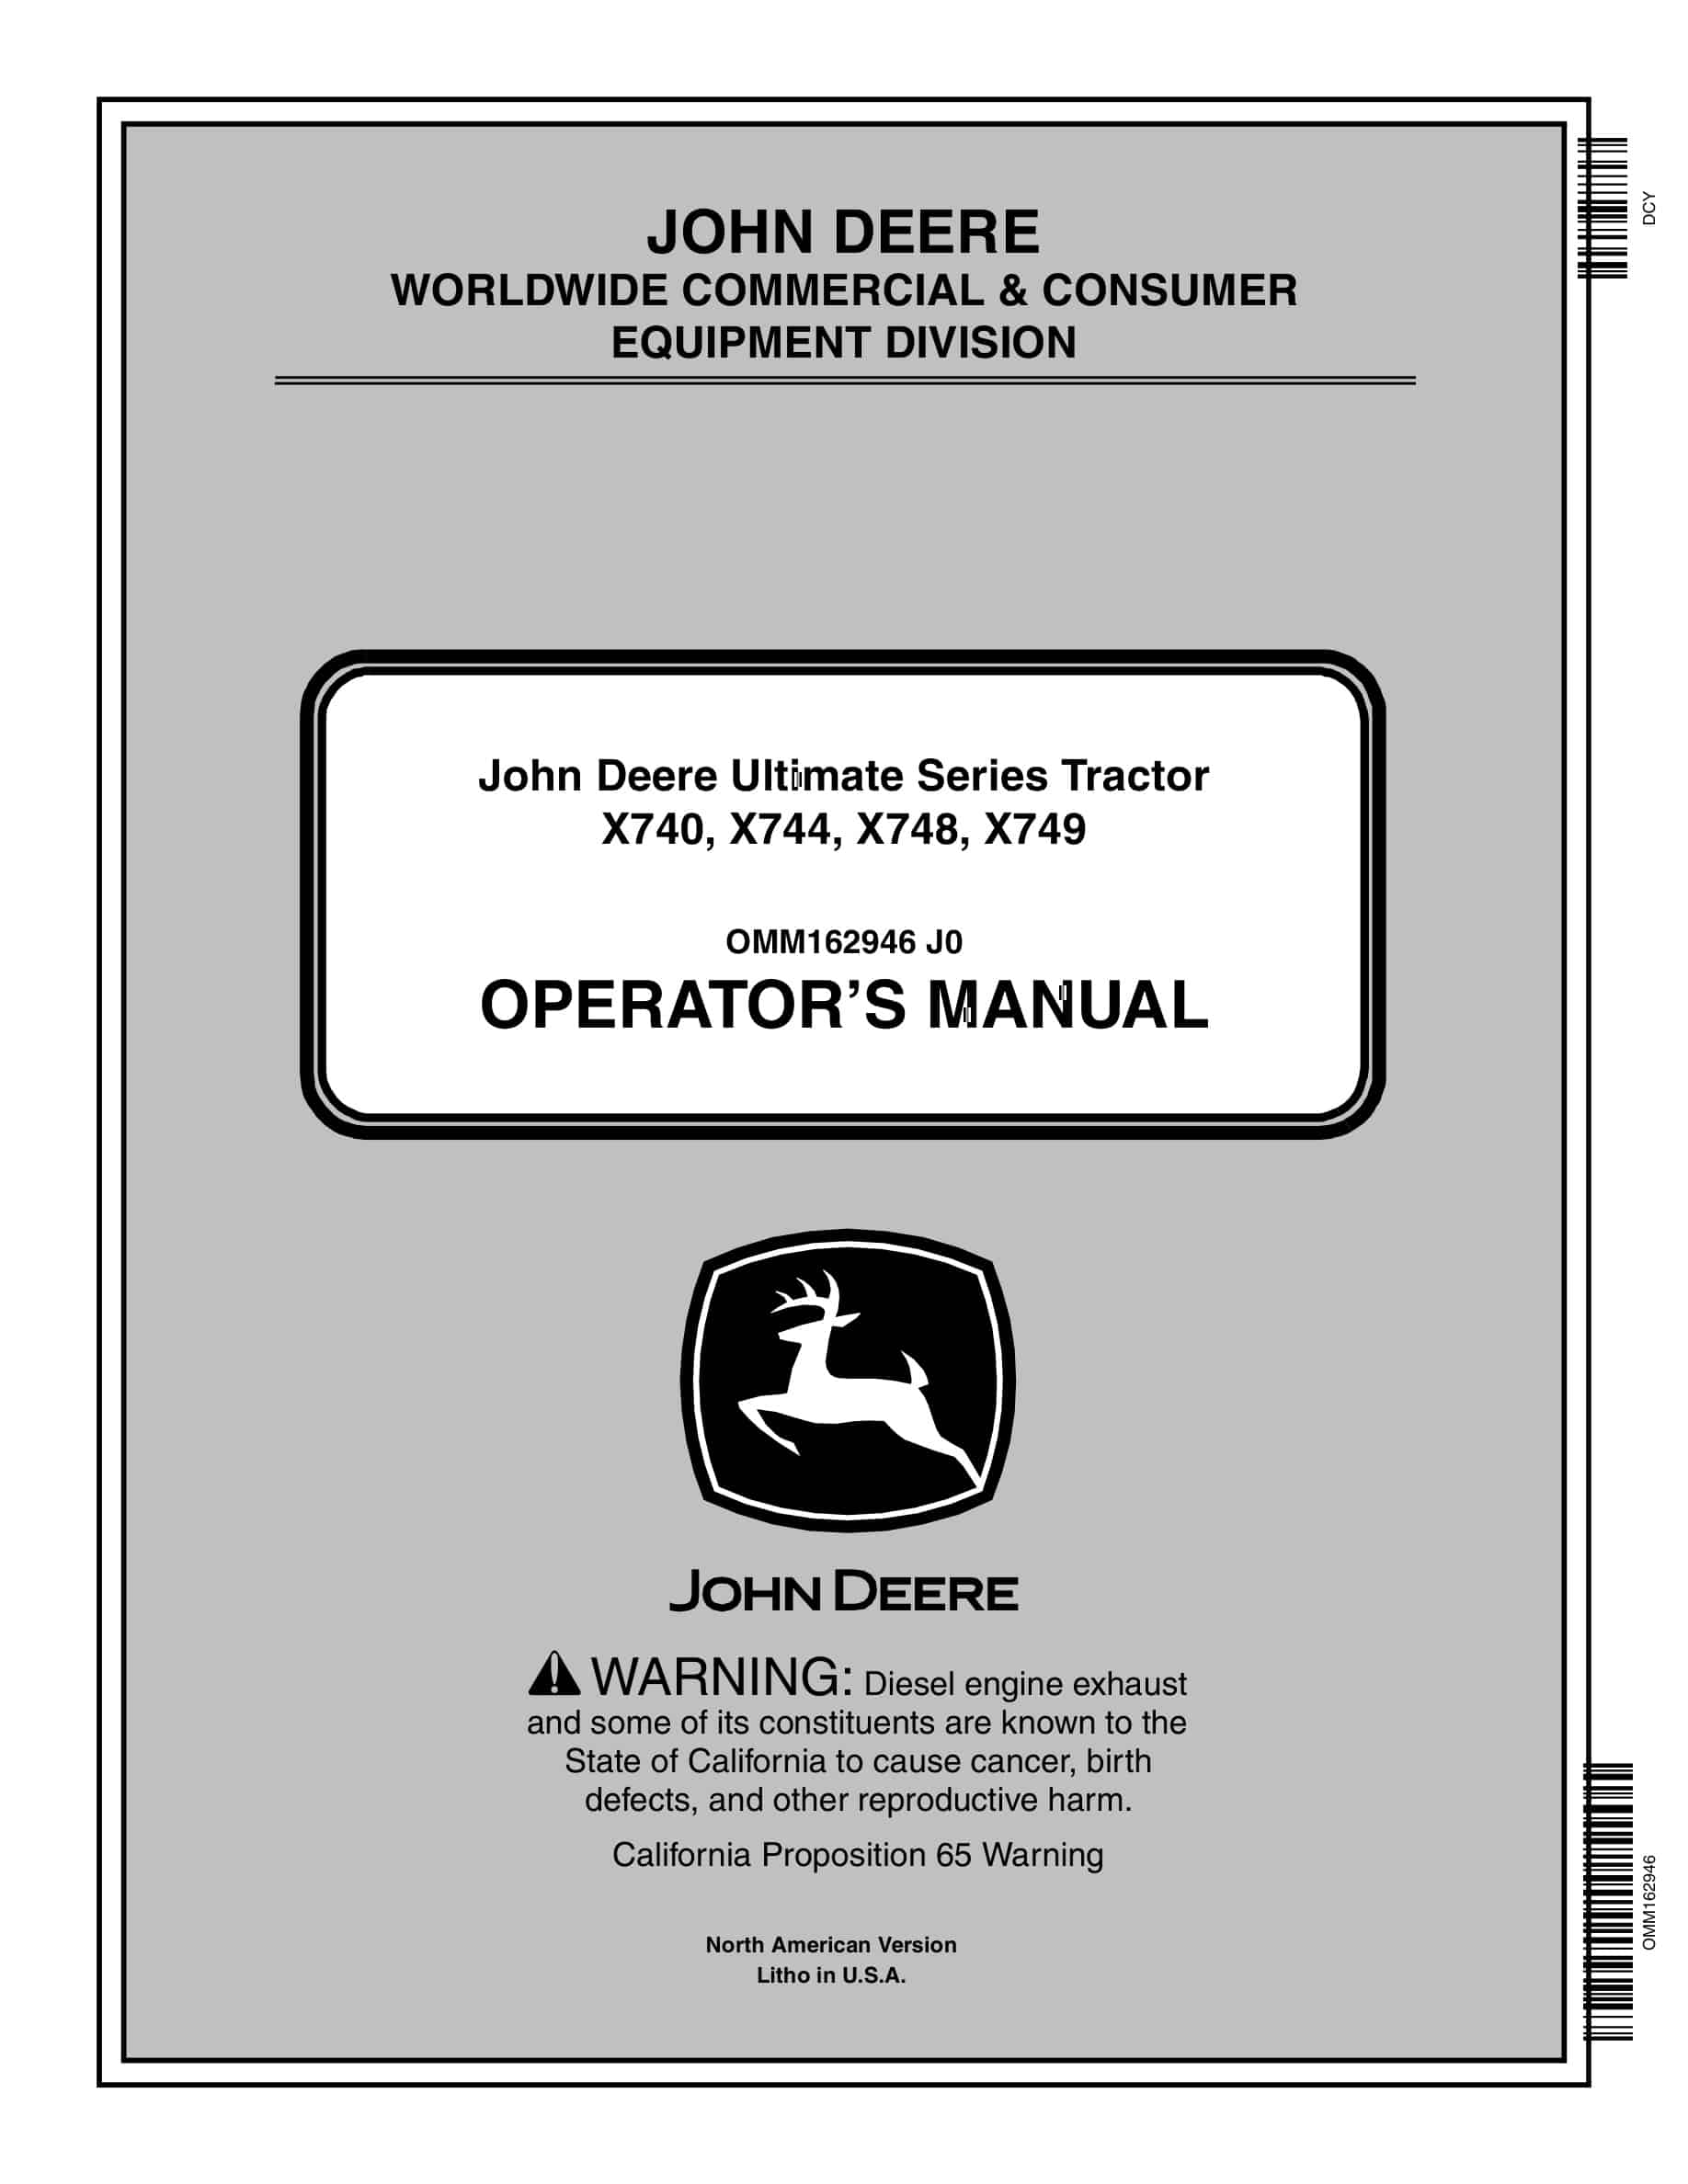 John Deere X740, X744, X748, X749 Tractor Operator Manual OMM162946-1